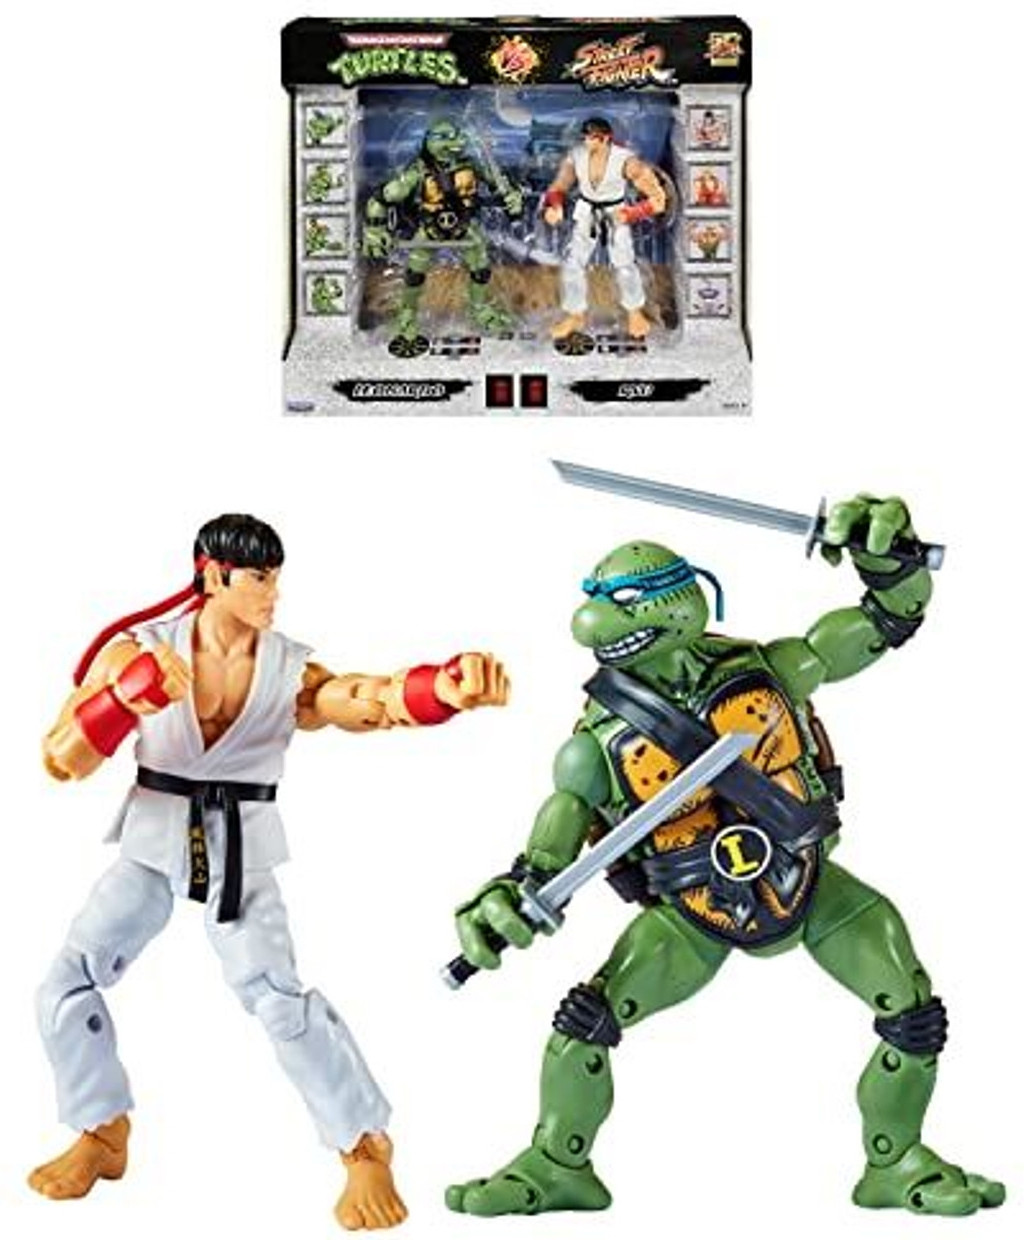 Teenage Mutant Ninja Turtles & Street Fighter Action Figure Double Pack - Leonardo & Ryu